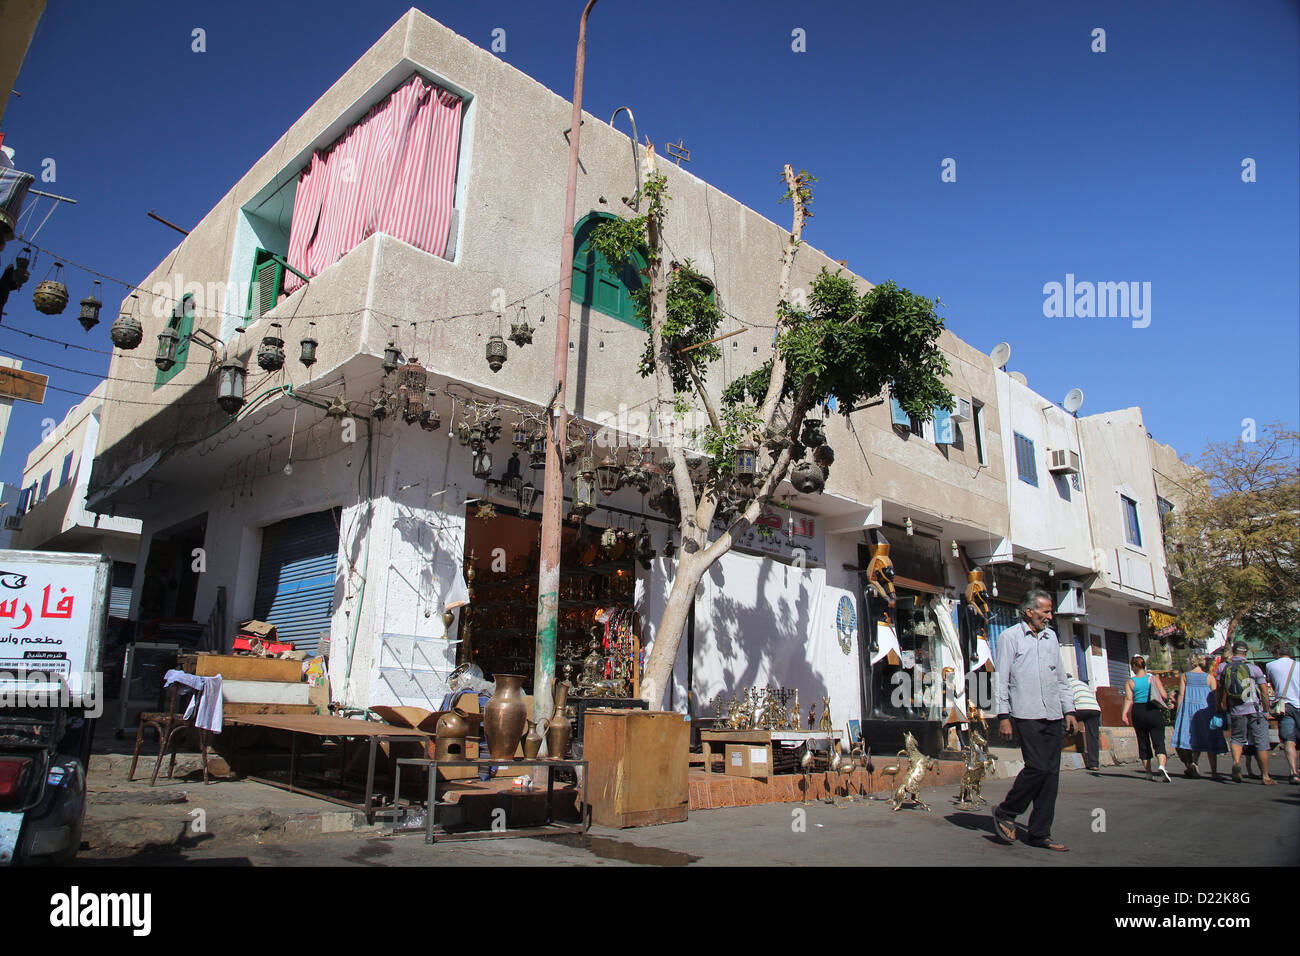 Le Vieux Marché, Charm el-Cheikh, Égypte Banque D'Images